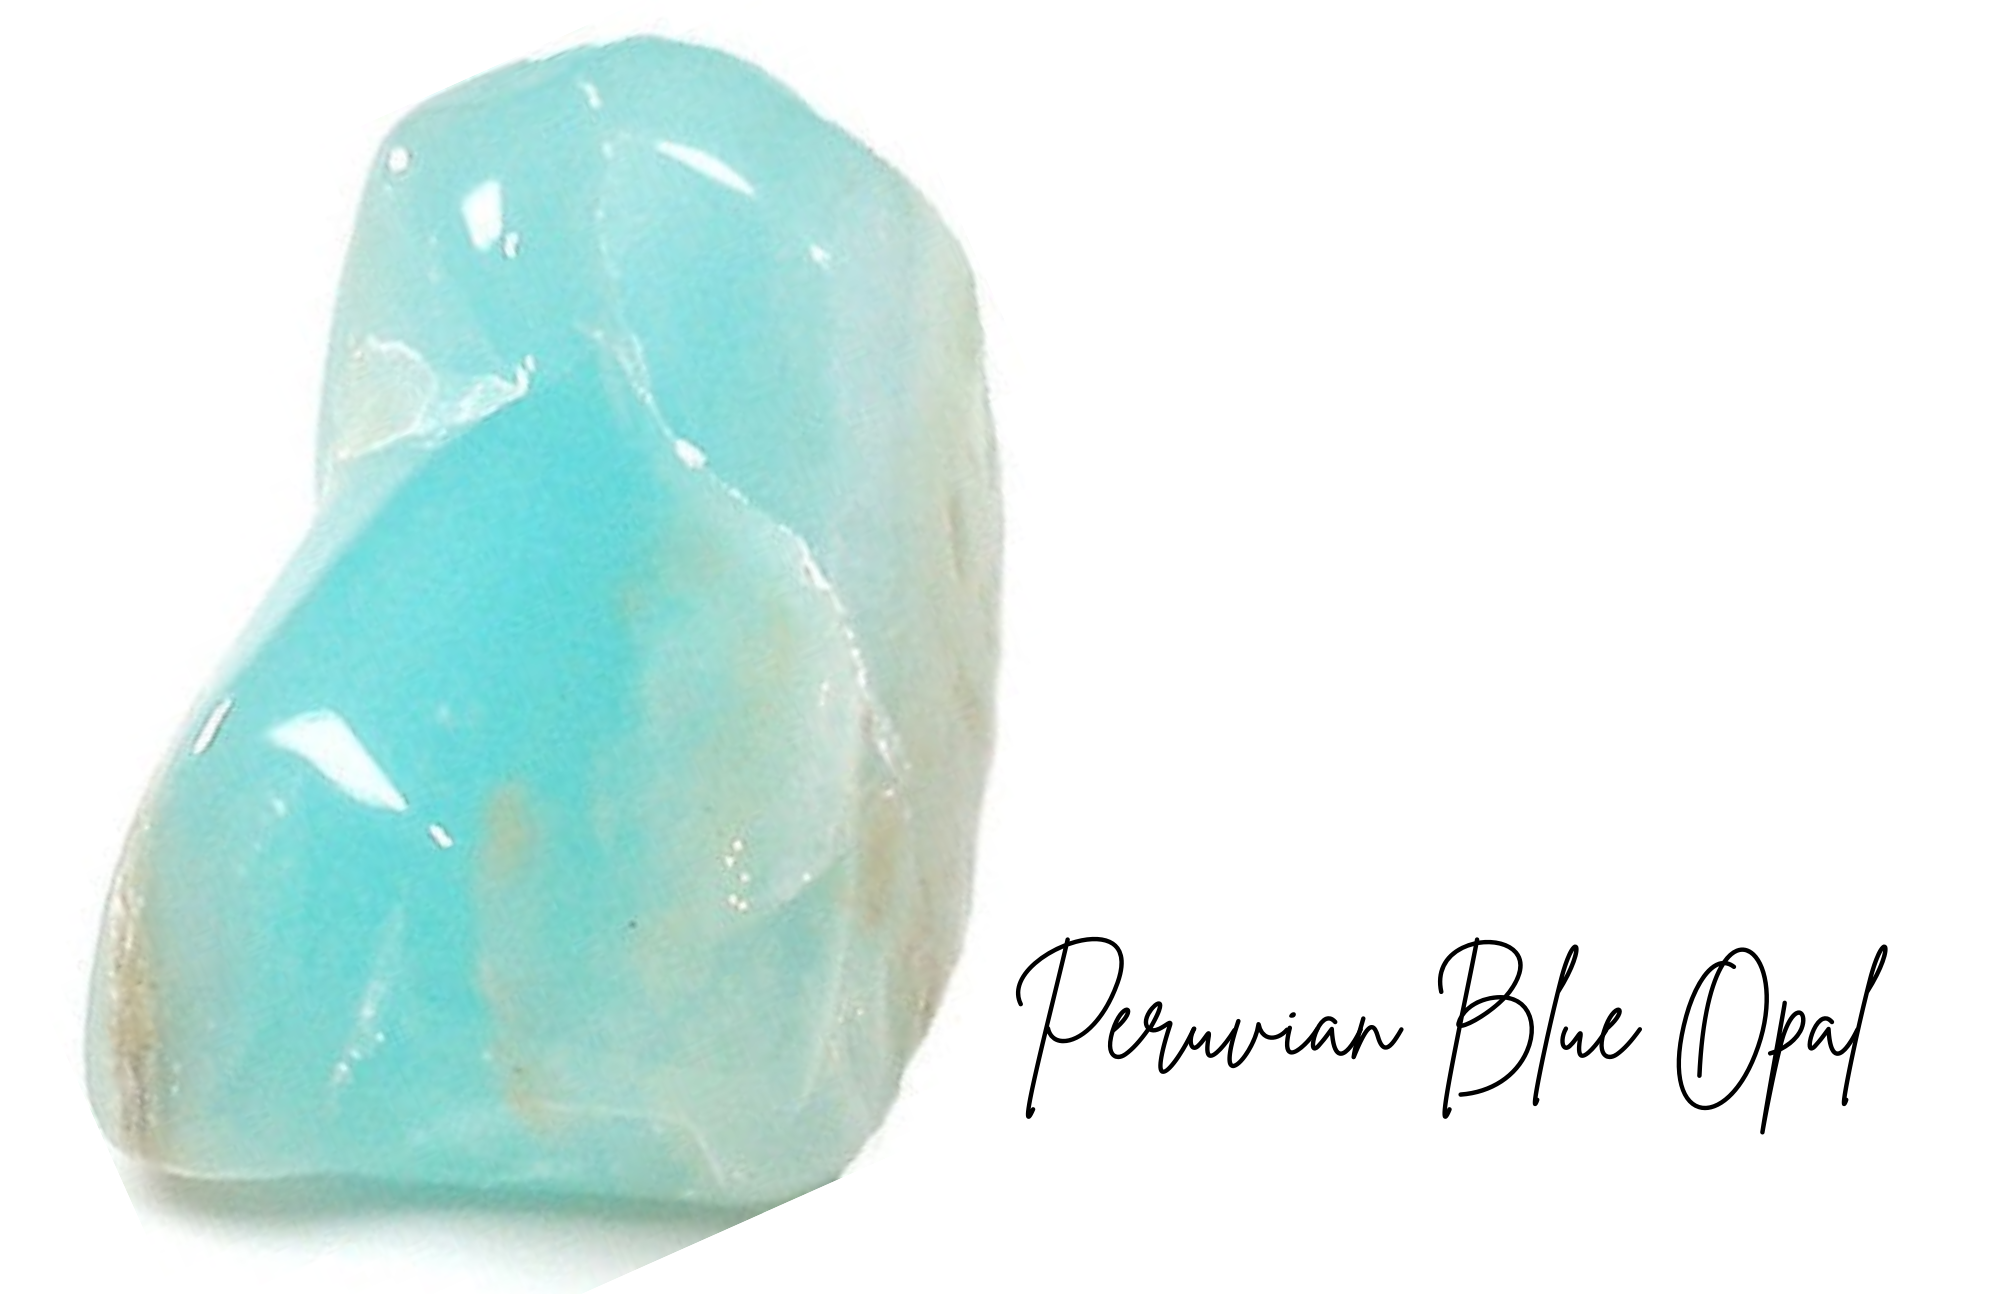 Peruvian Blue Opal - The Most Magnificent Stone In Peru